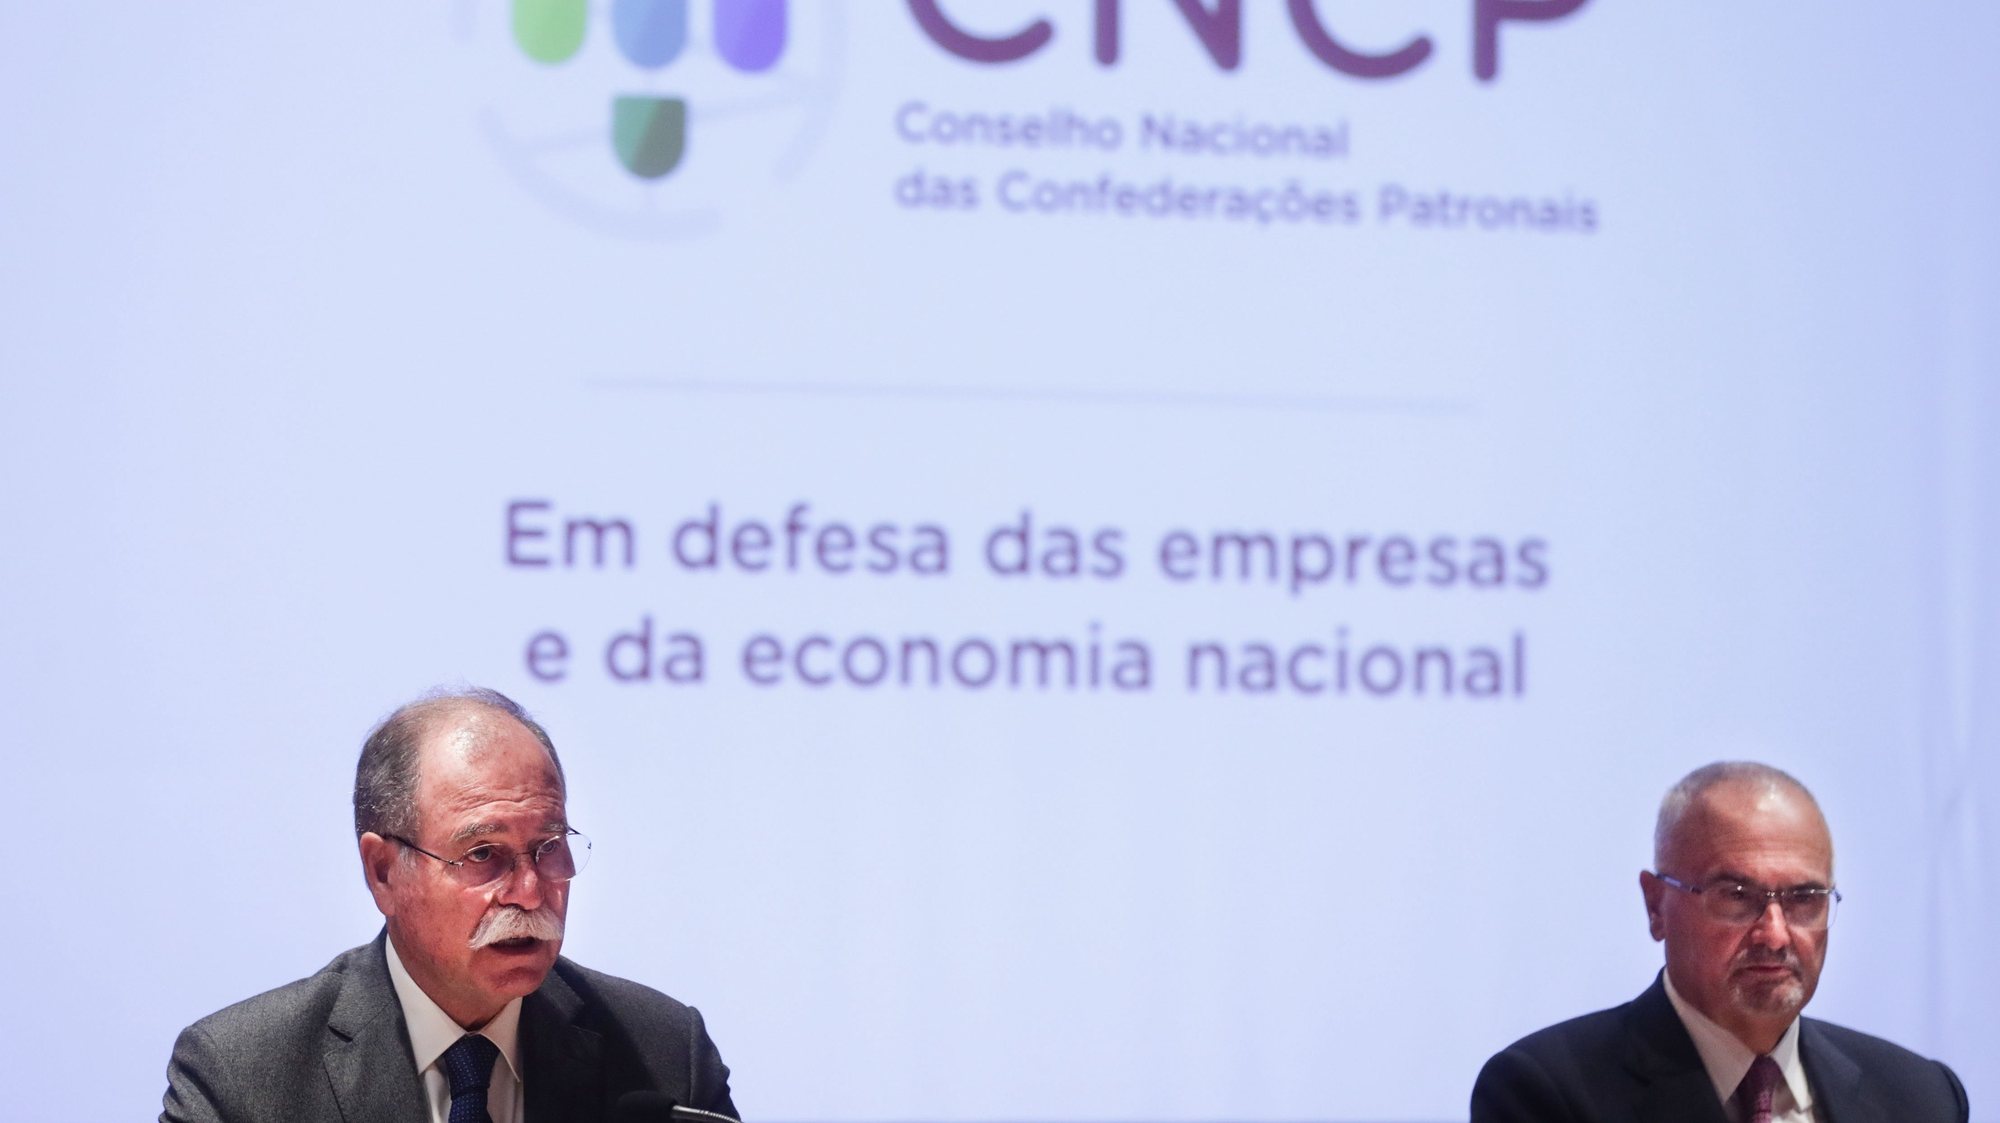 O presidente da Confederação dos Agricultores de Portugal (CAP), Eduardo Oliveira e Sousa (E), intervém durante a conferência de imprensa de apresentação do Conselho Nacional das Confederações Patronais, na Culturgest, em Lisboa, 18 de maio de 2021. TIAGO PETINGA/LUSA